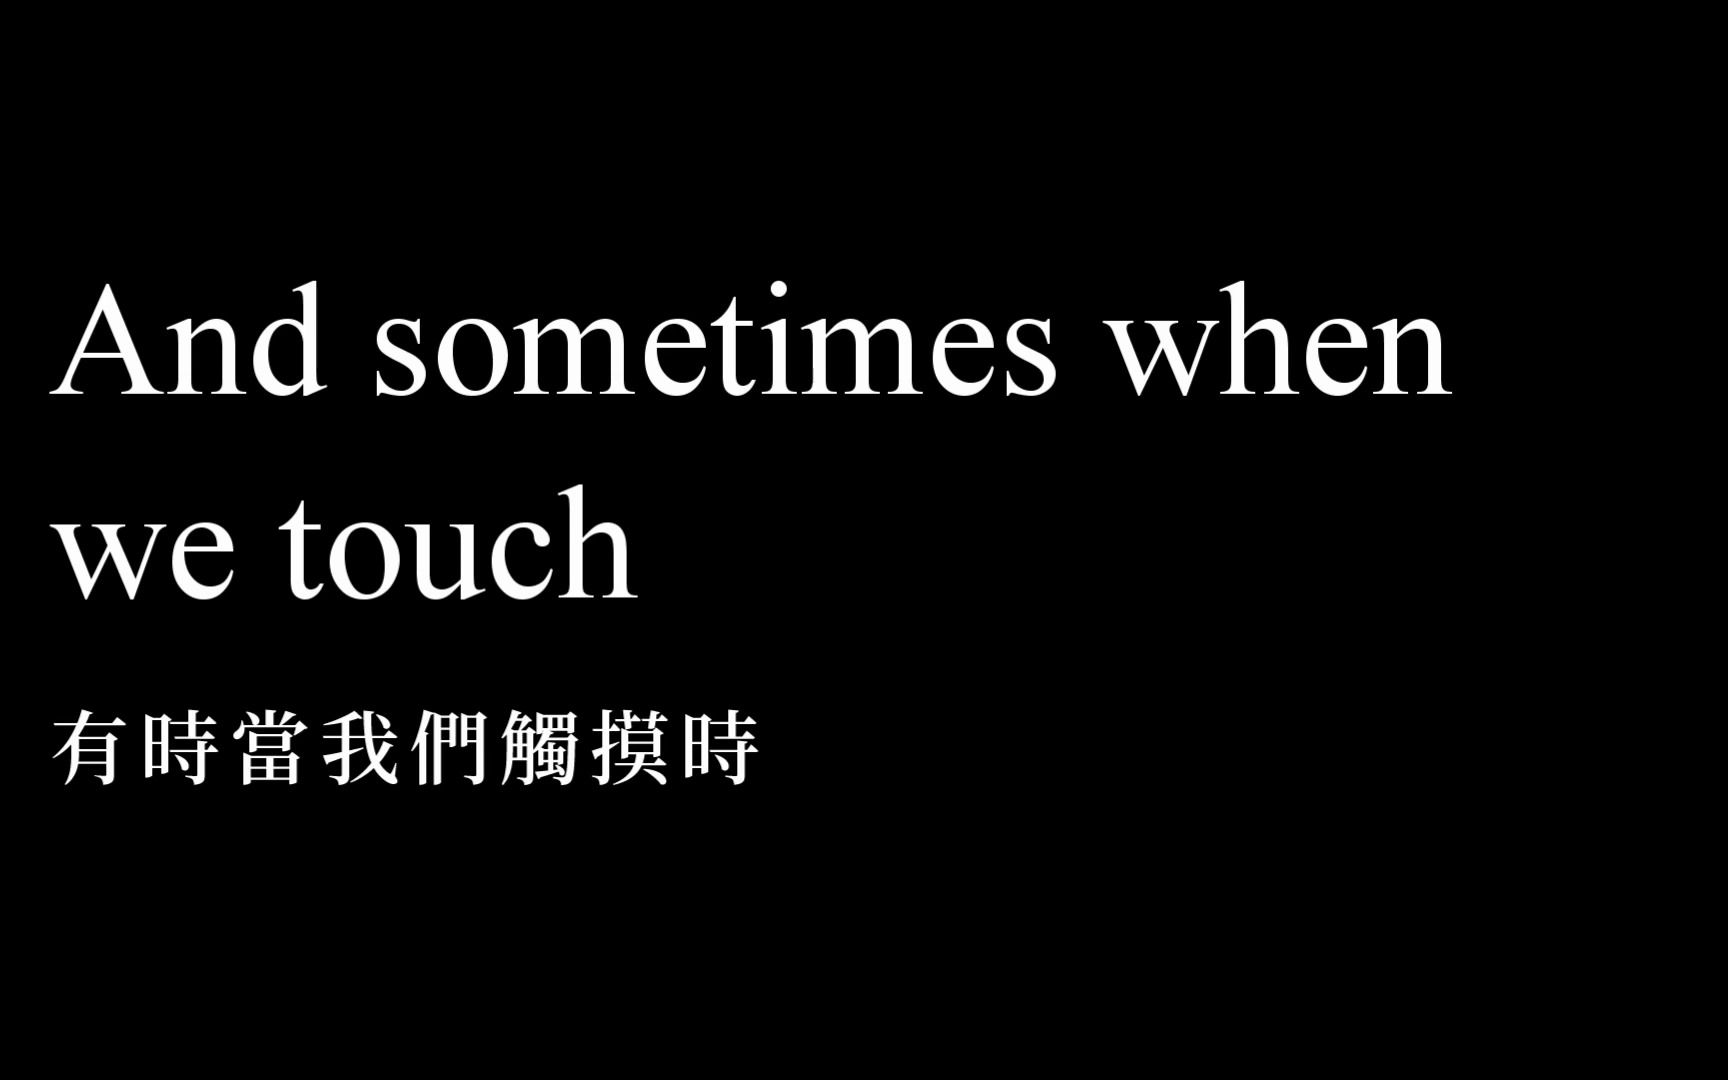 [图]Olivia Ong王儷婷 - Sometimes When We Touch有時當我們接觸 中文英文字幕 lyrics